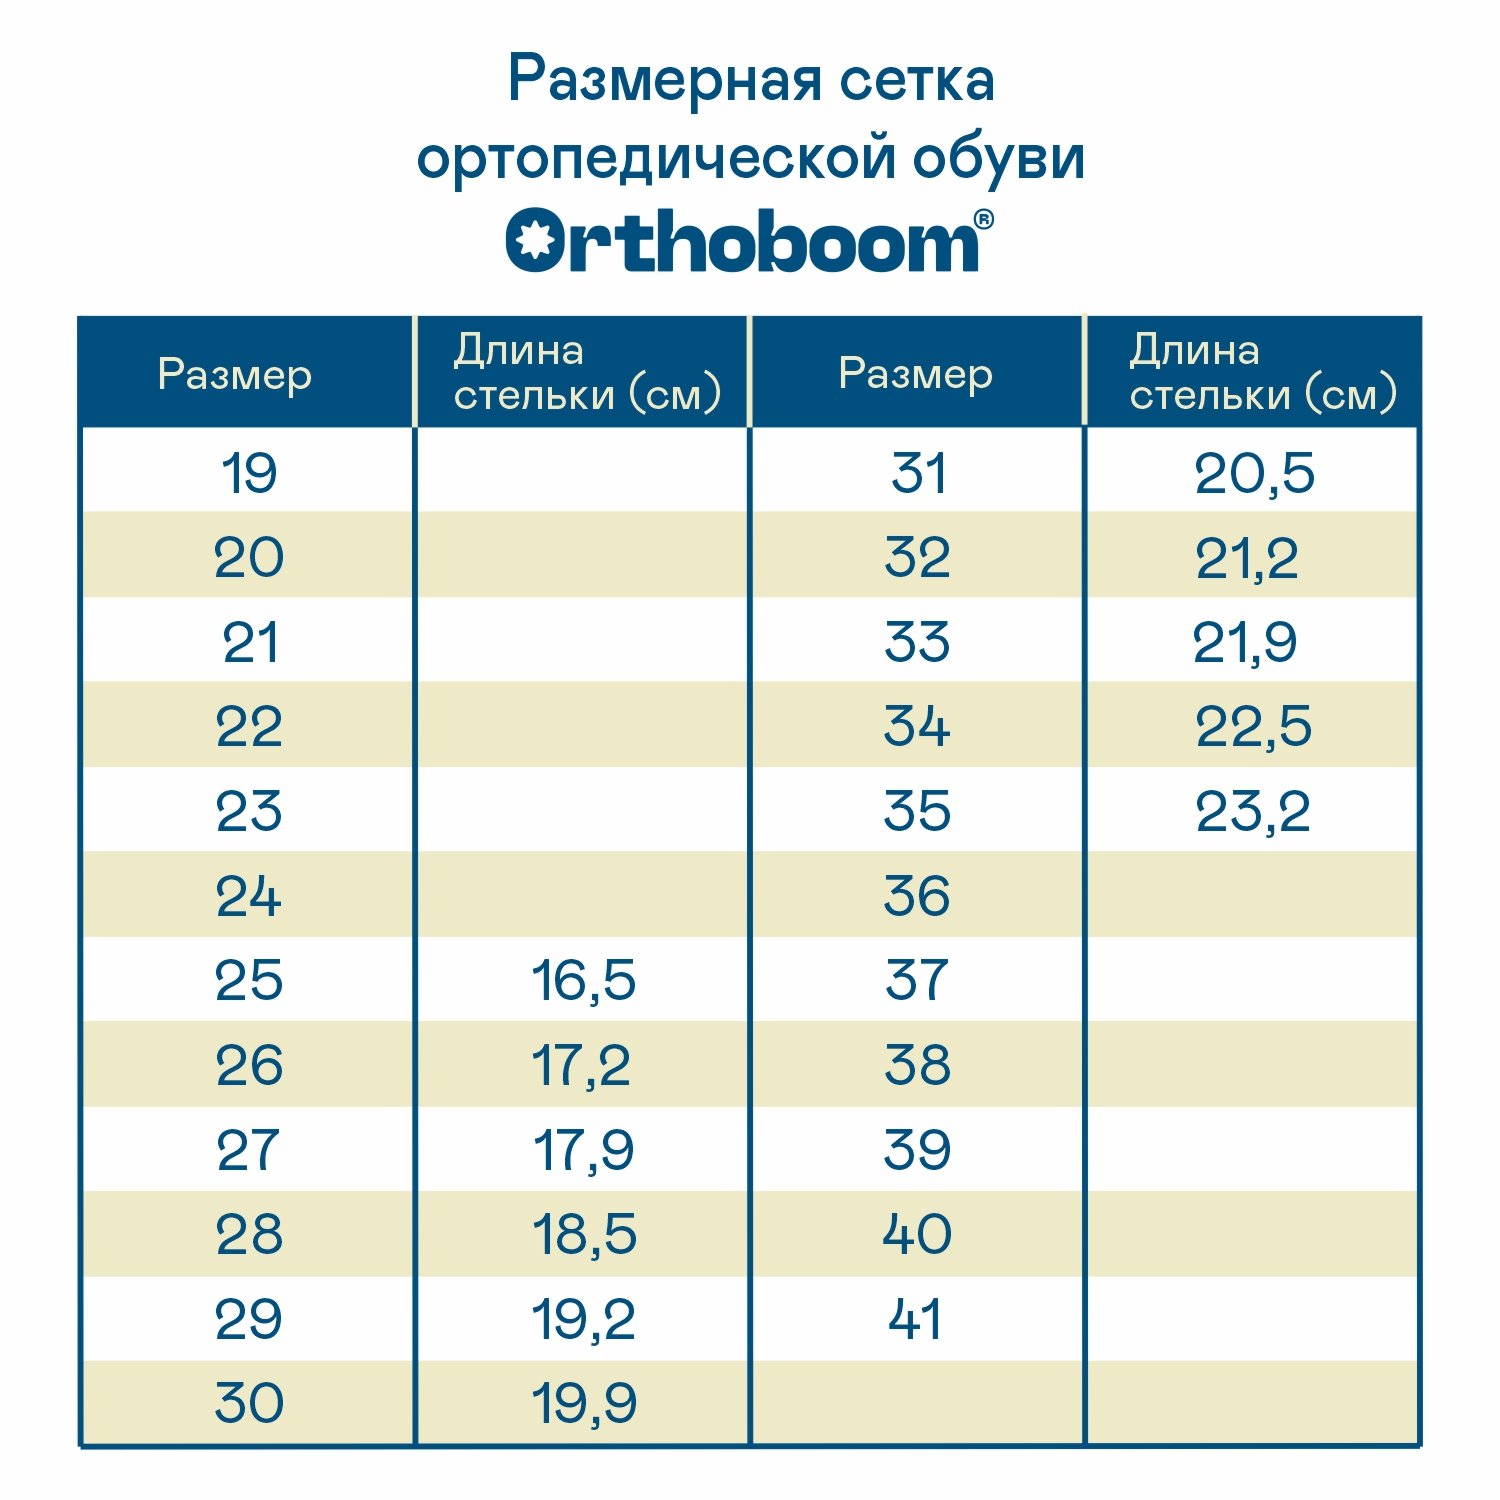 Детские кроссовки ORTHOBOOM 37054-03 синий